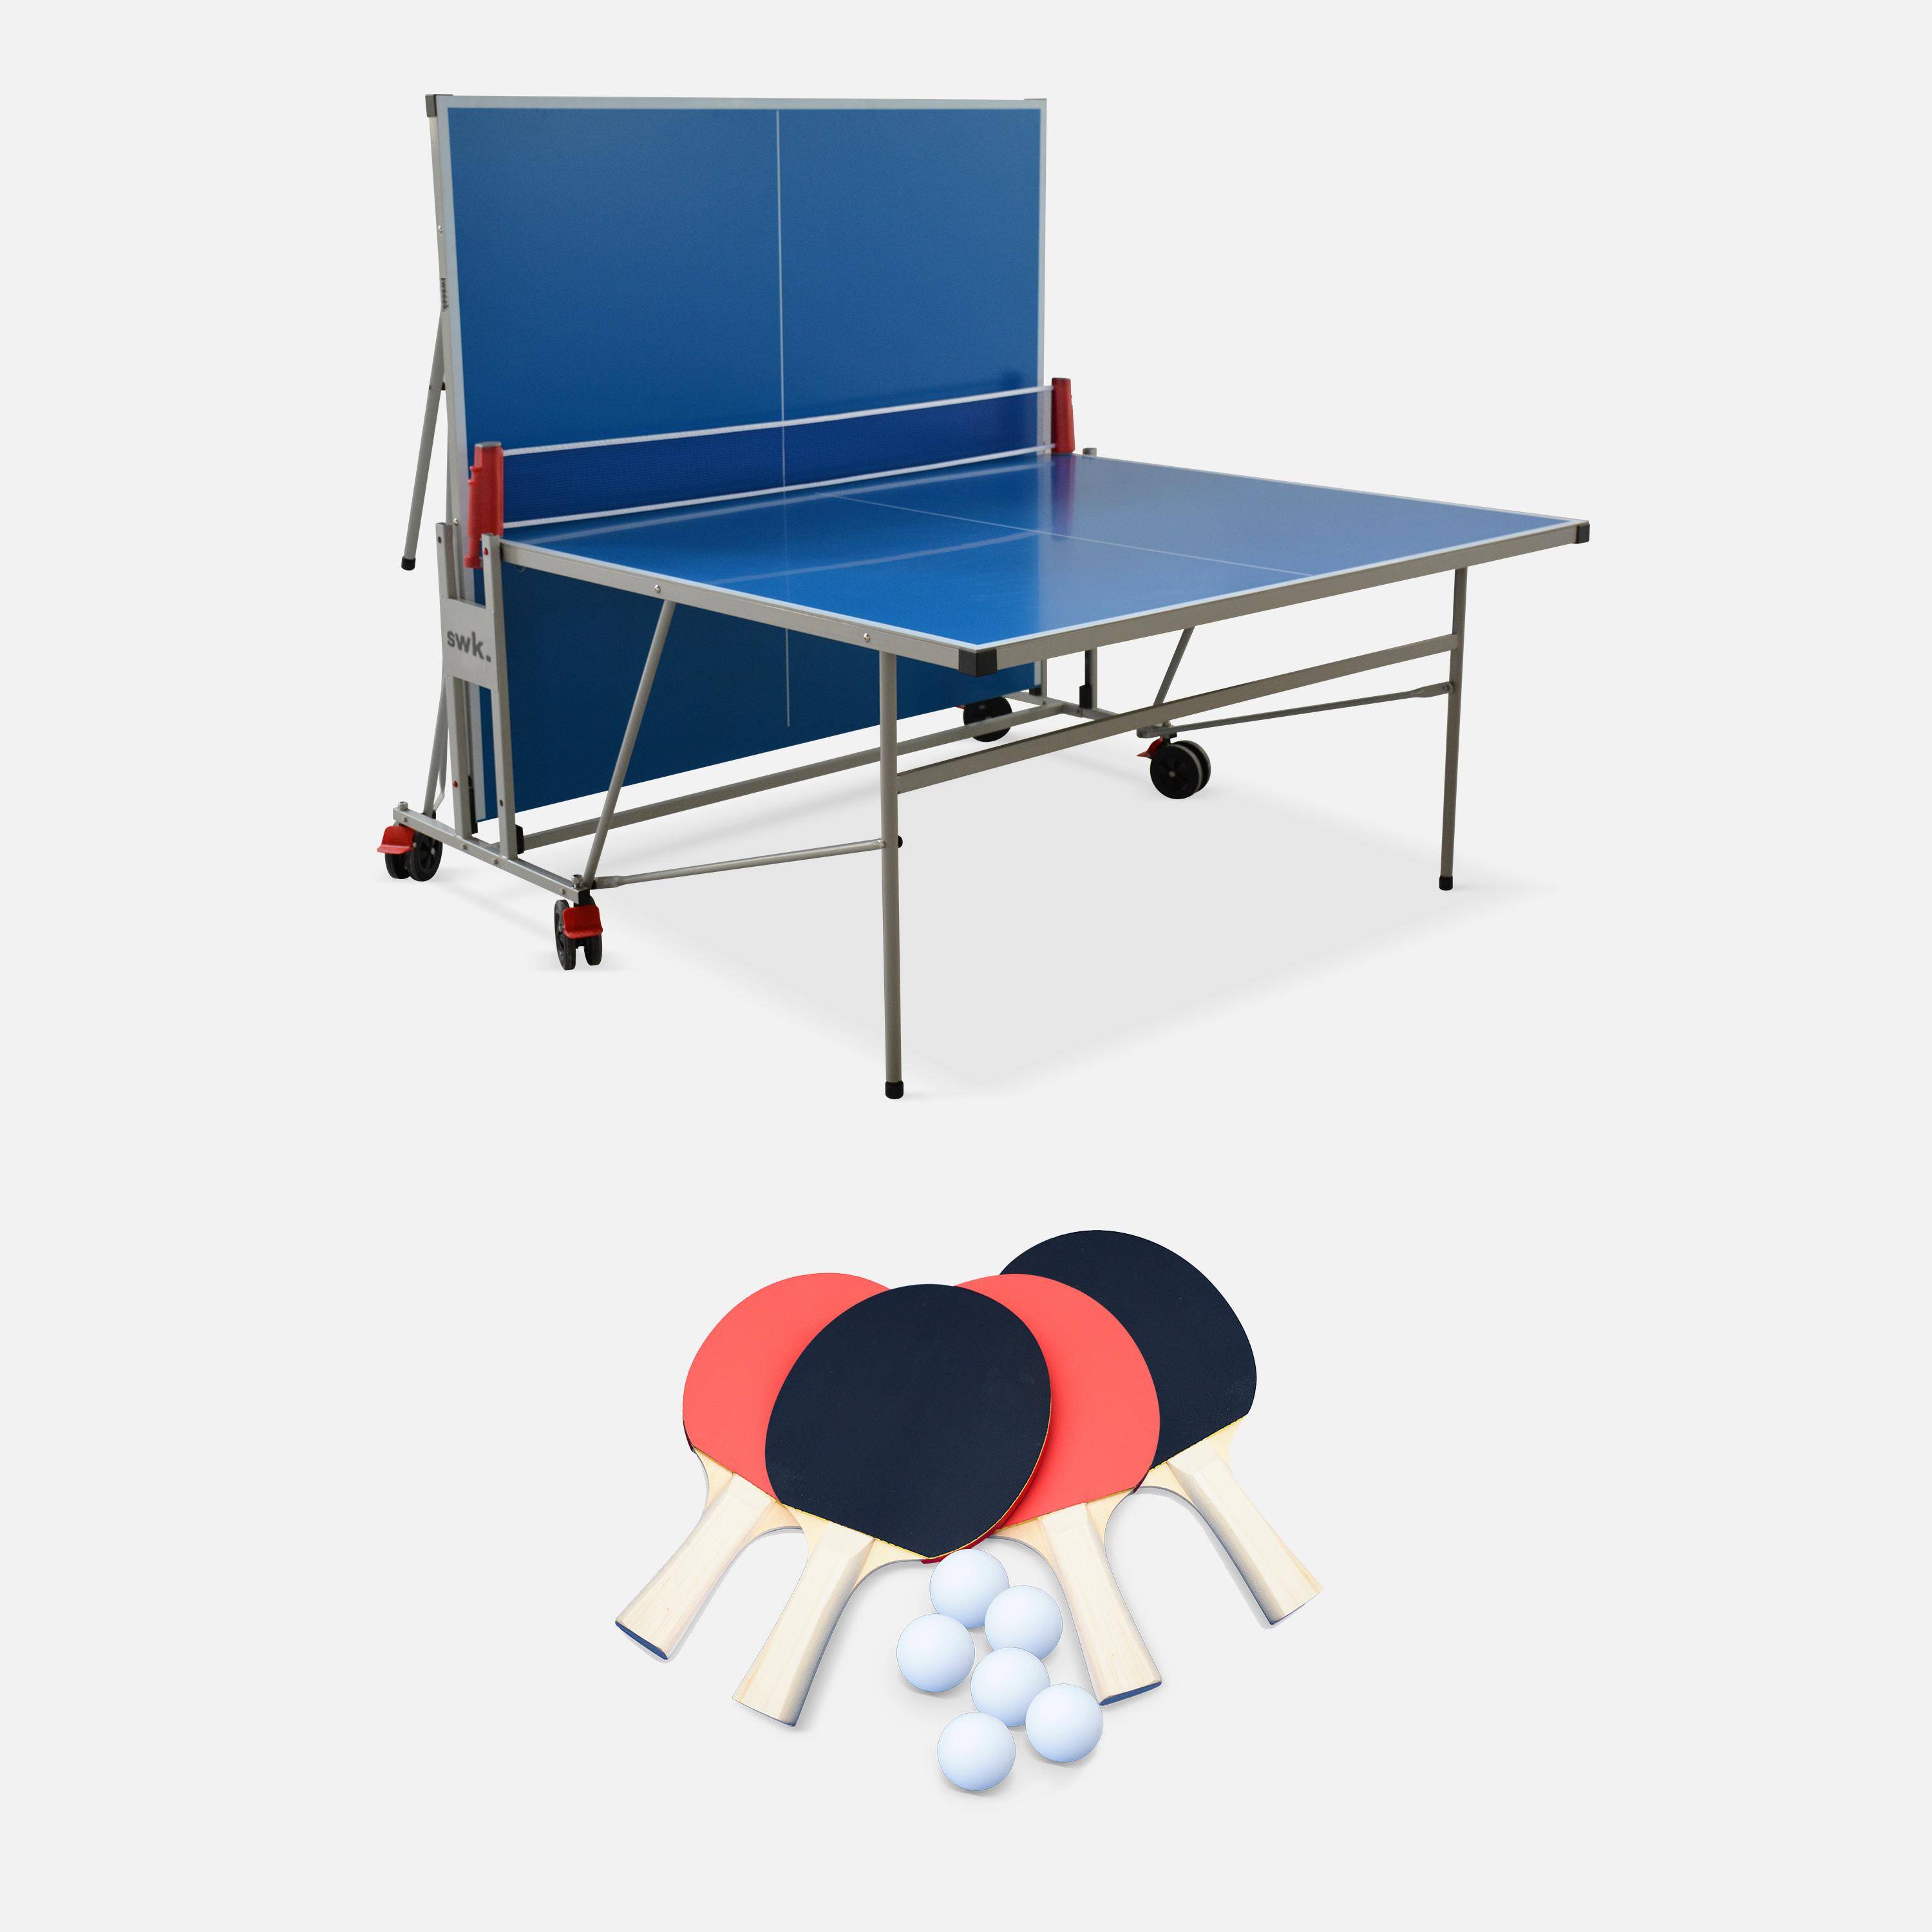 Table de ping pong OUTDOOR bleue - table pliable avec 4 raquettes et 6 balles, pour utilisation extérieure, sport tennis de table Photo4